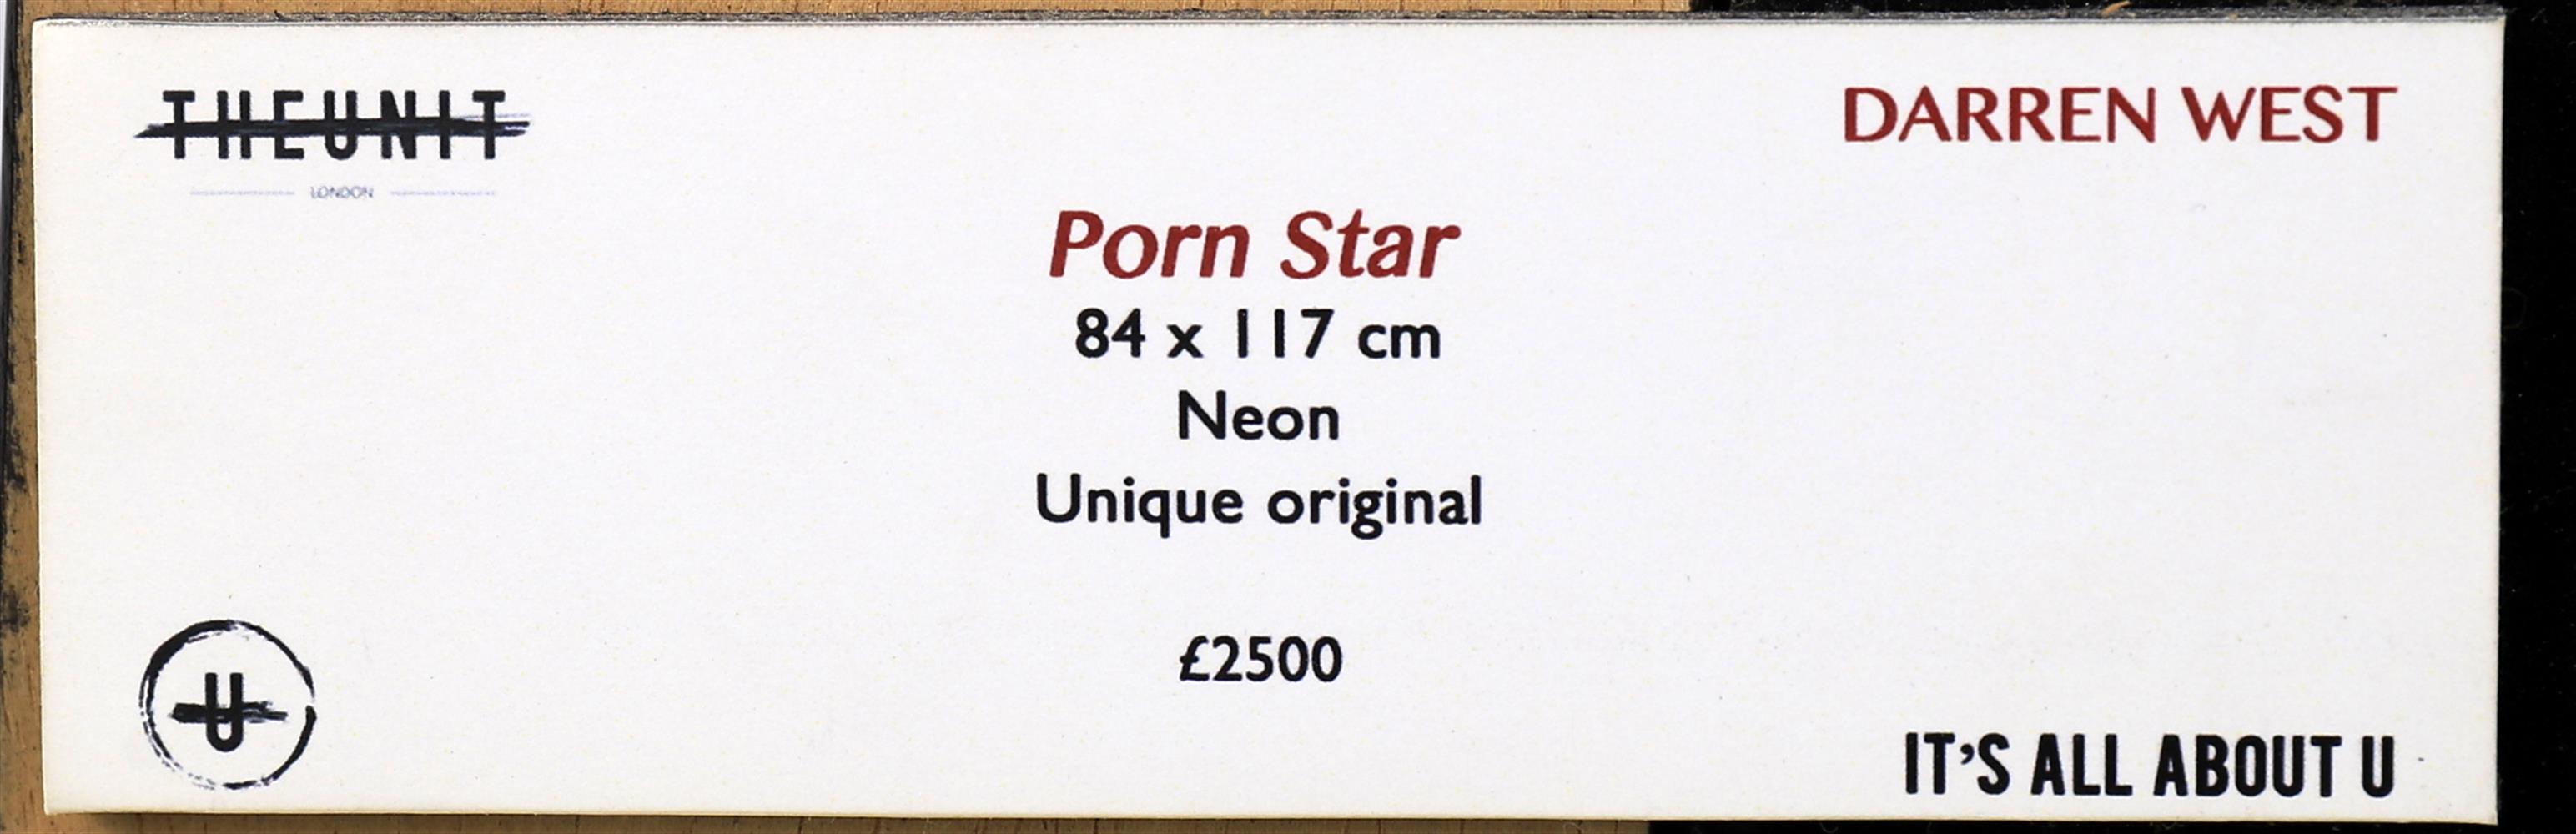 λ Darren West (Contemporary), 'Porn Star'- neon sculpture - Image 2 of 6